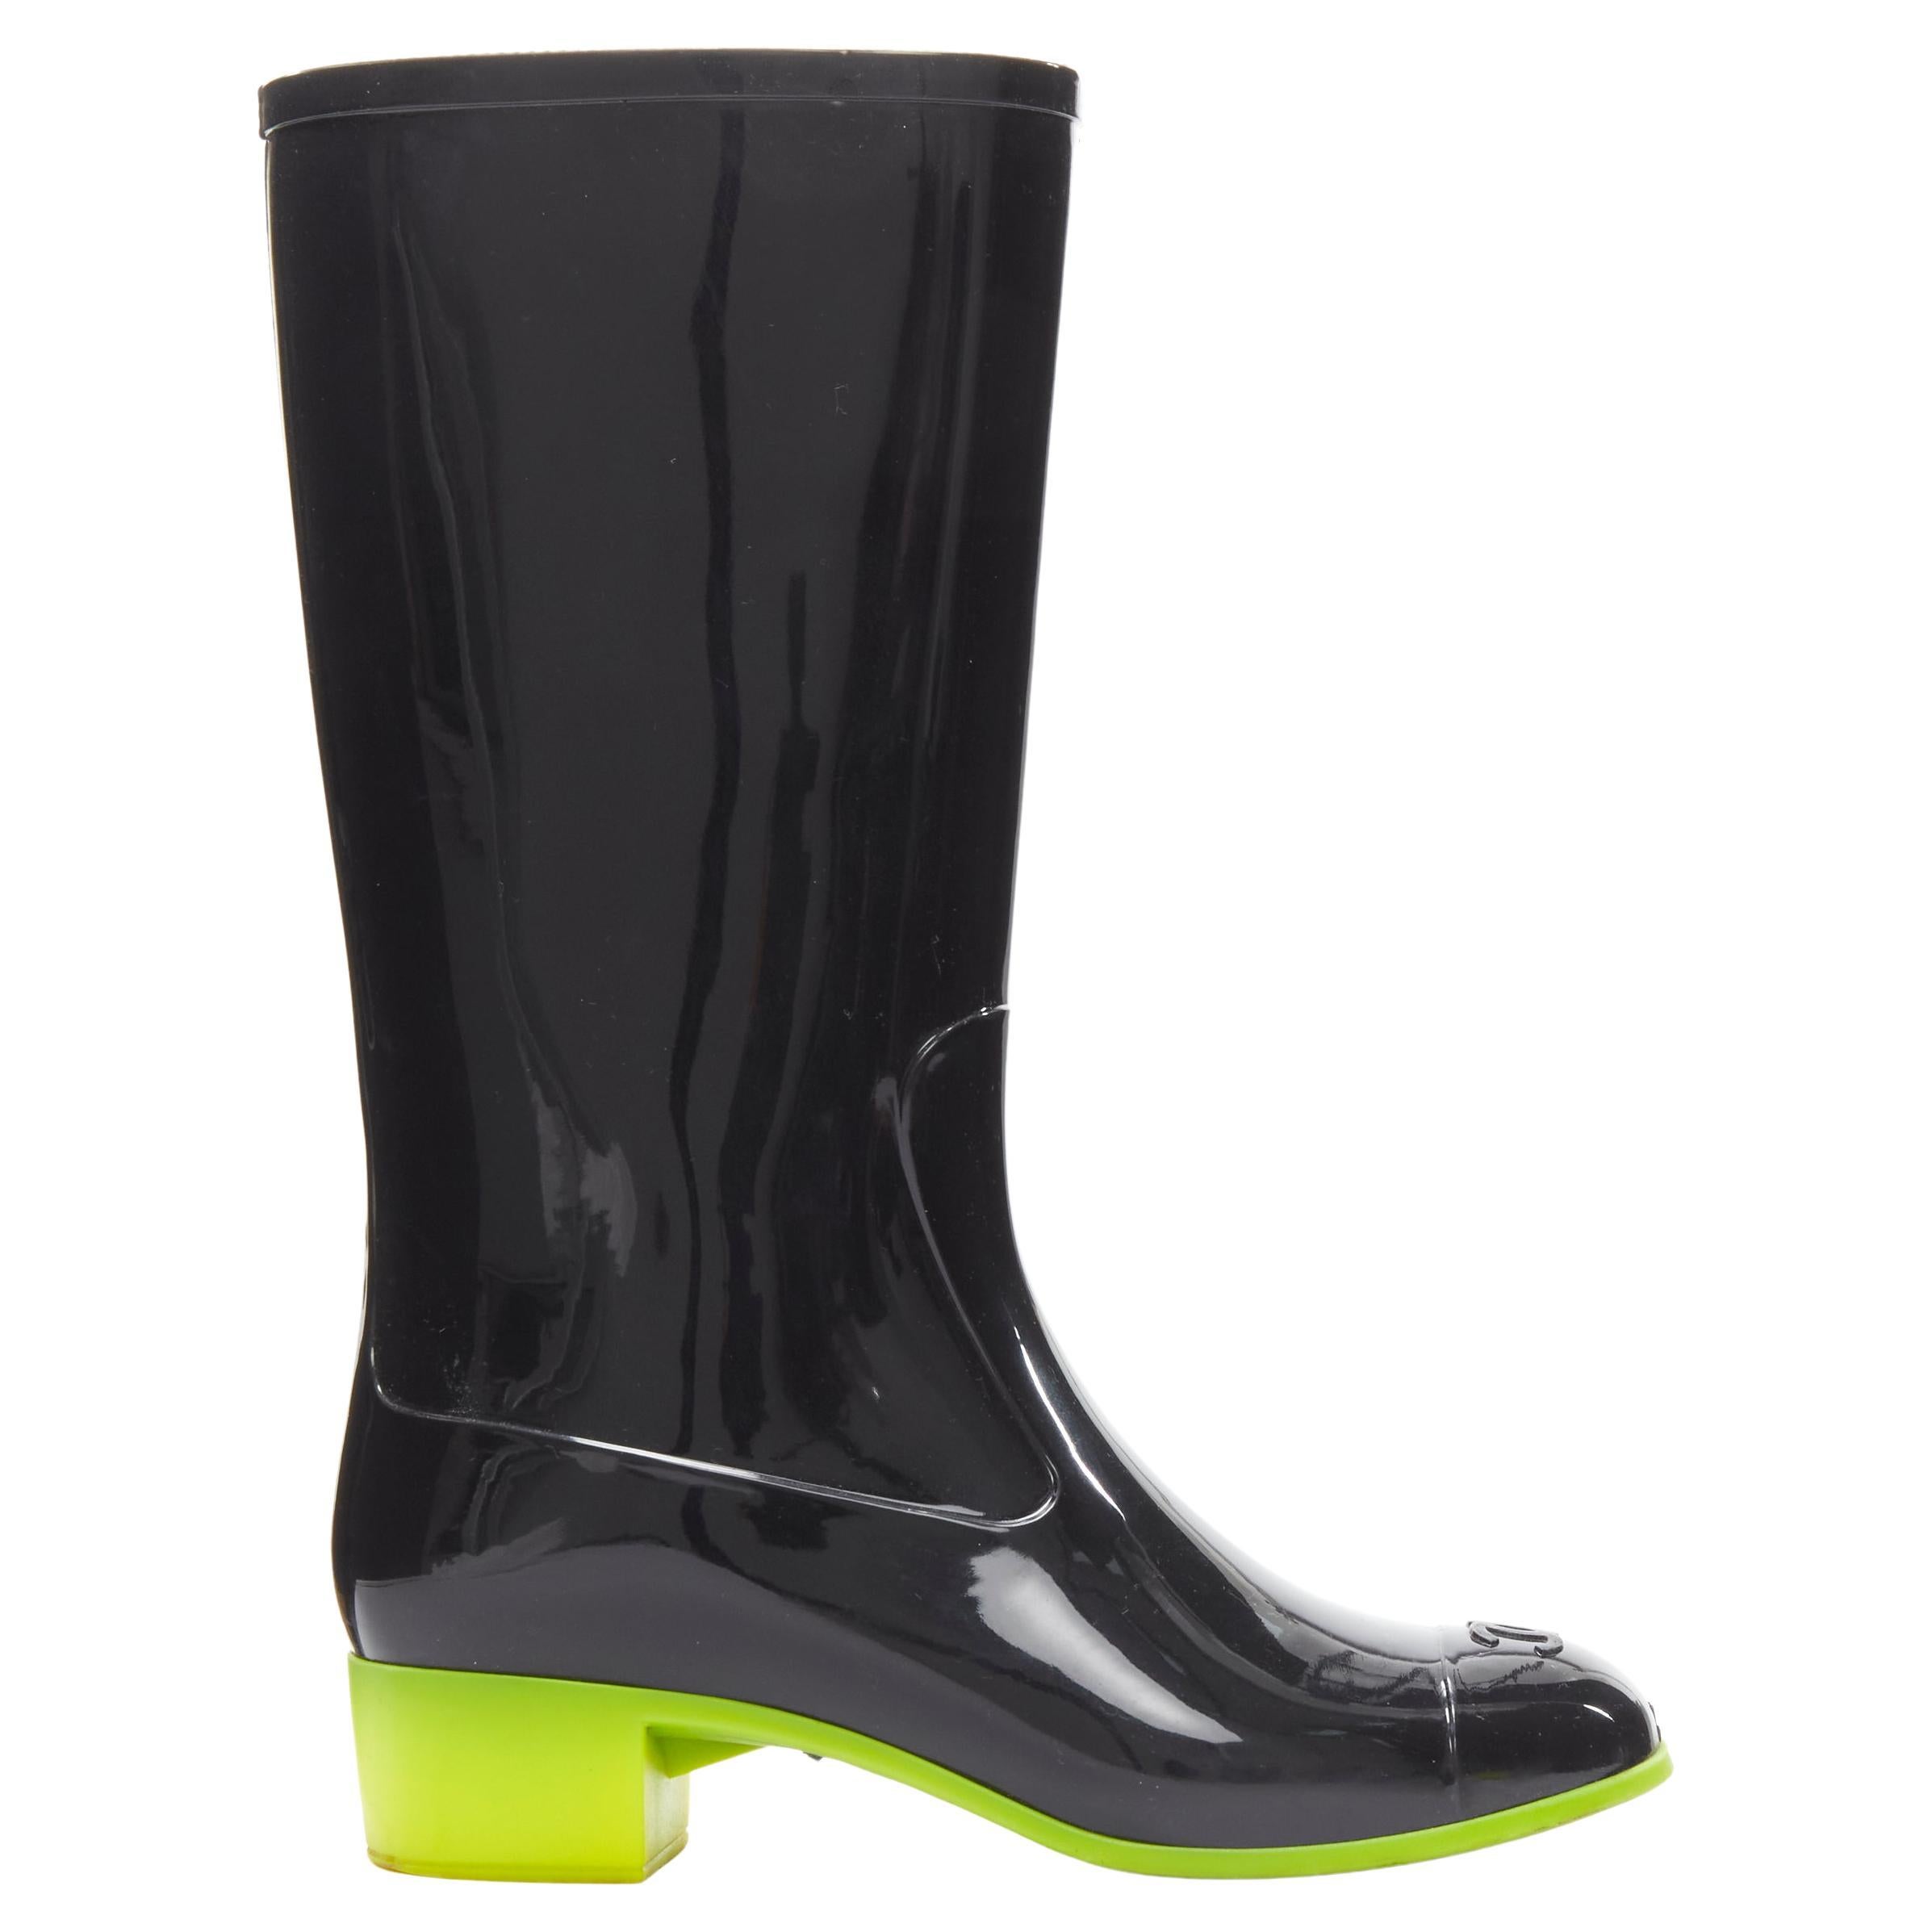 CHANEL CC toe cap black rubber green sole tall rainboots boots EU36